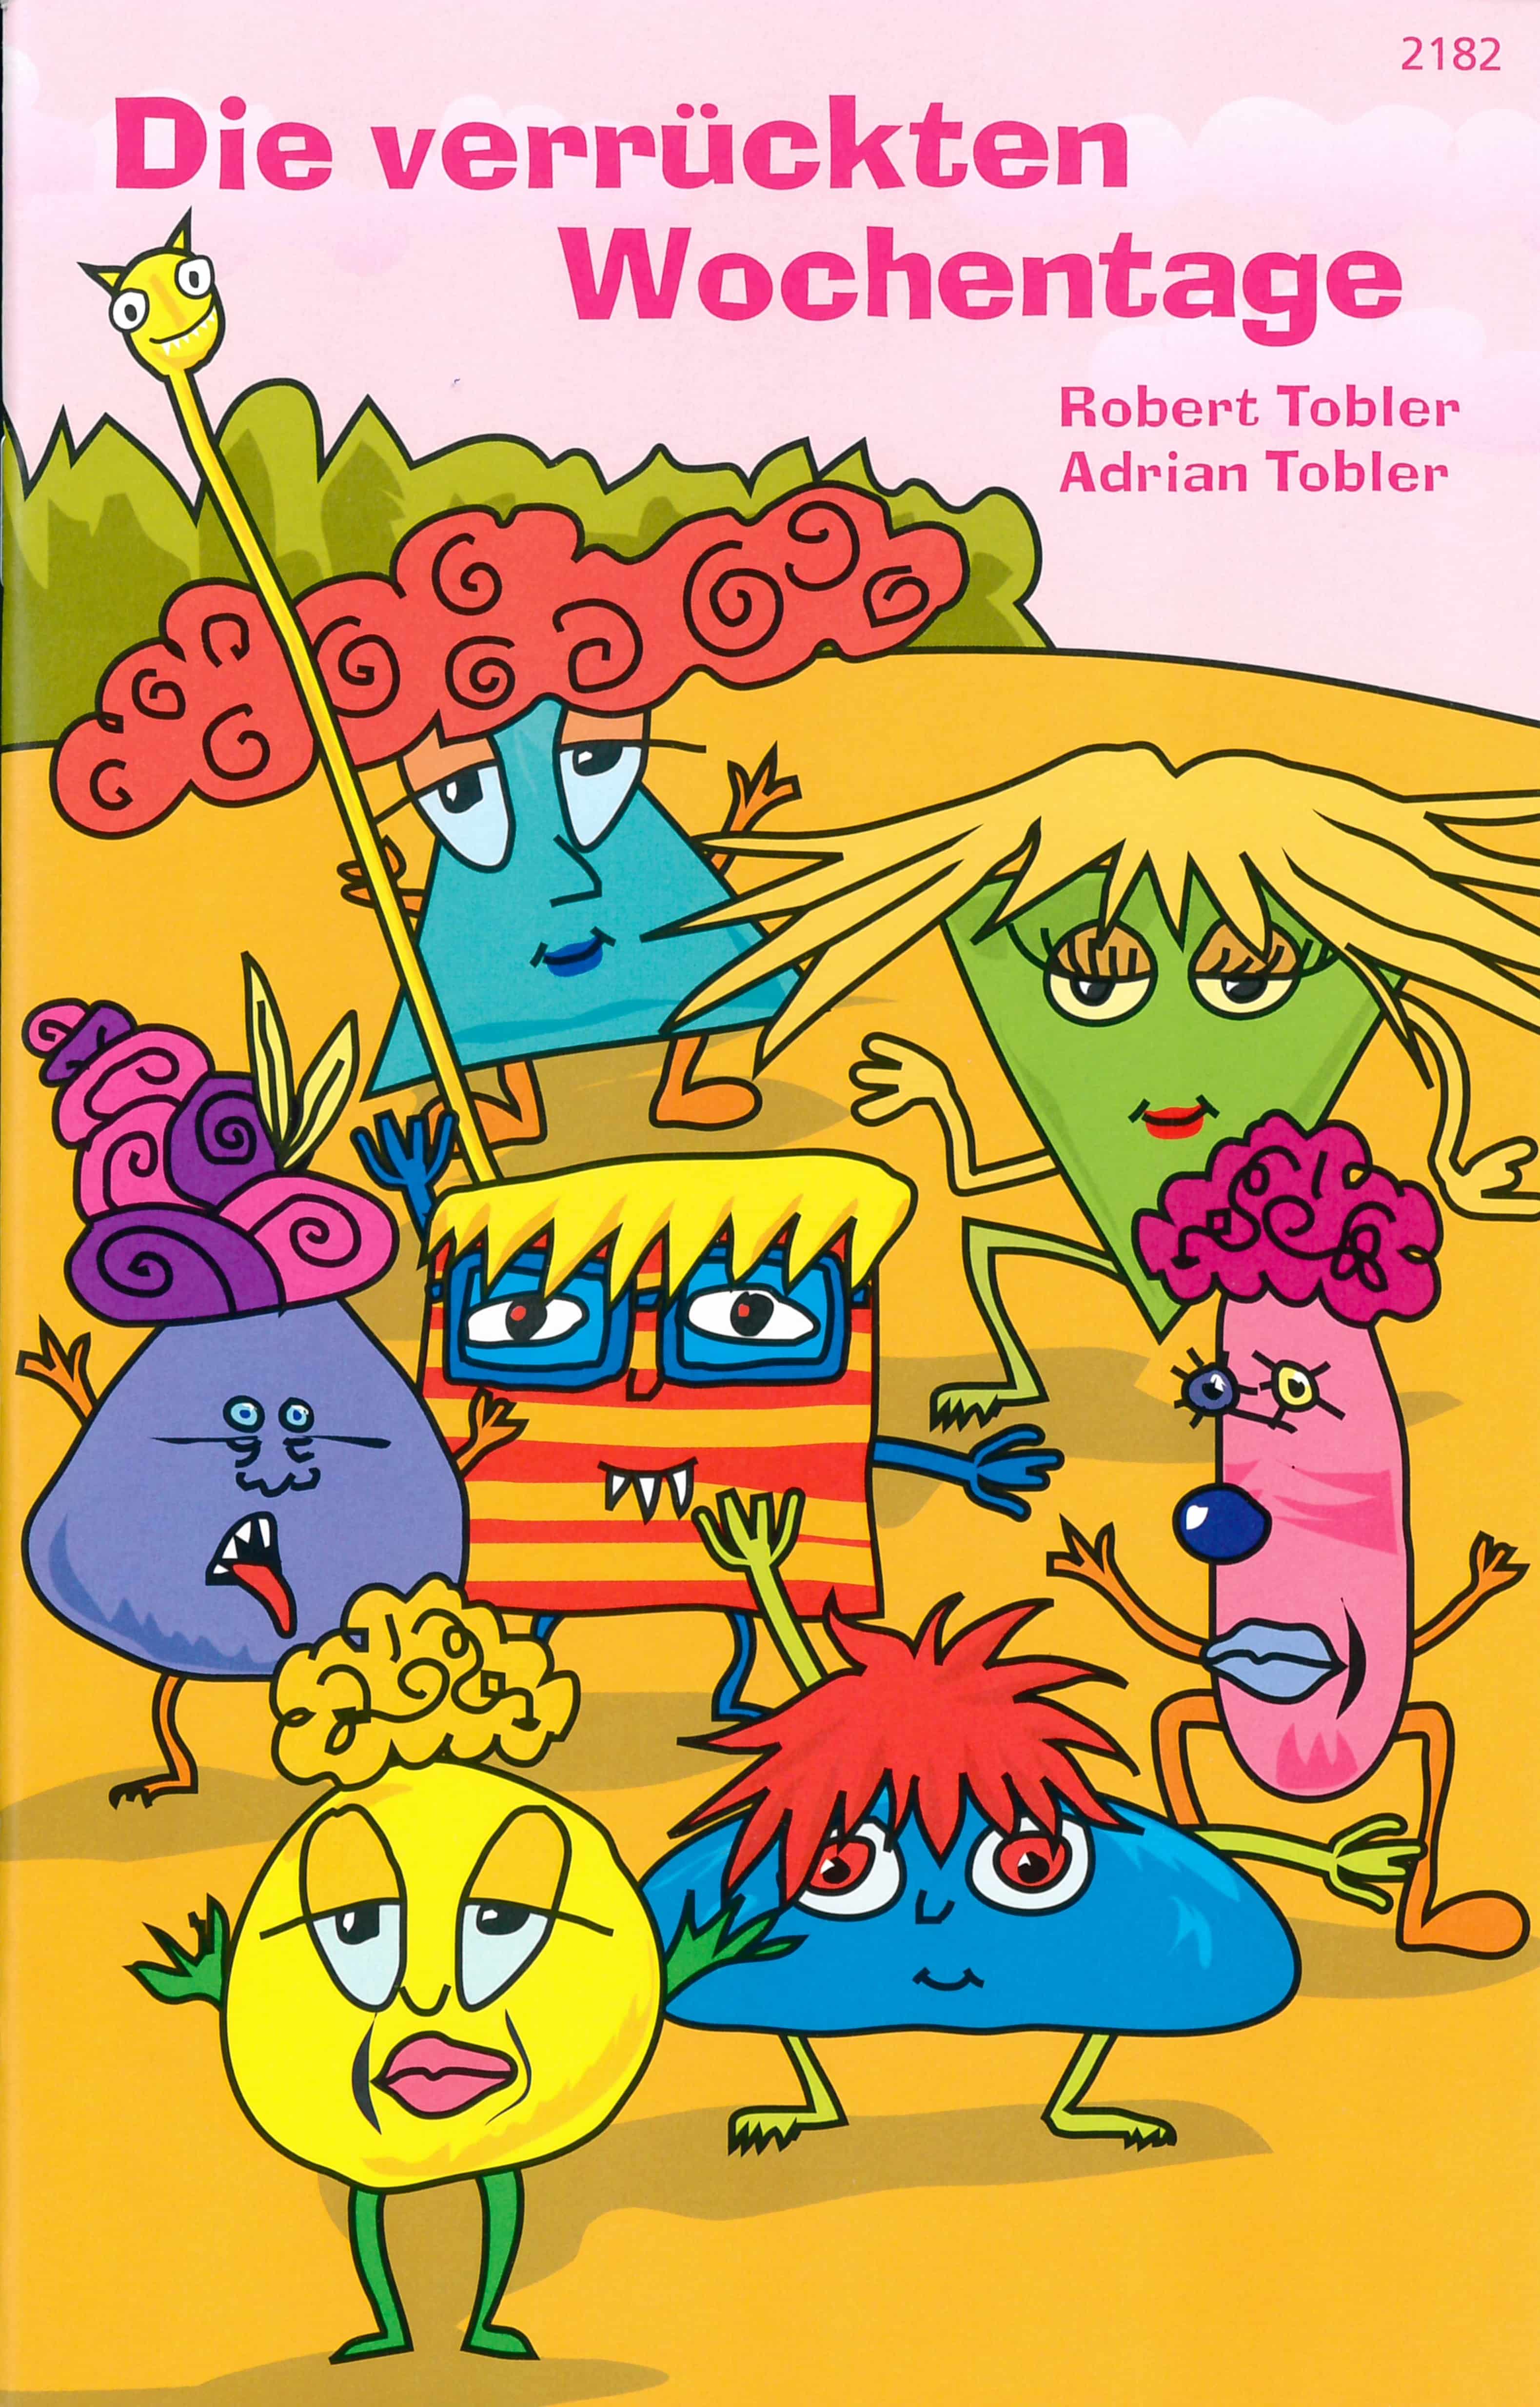 Die verrueckten Wochentage, ein Kinderbuch von Robert Tobler, Illustration von Adrian Tobler, SJW Verlag, Fantasy